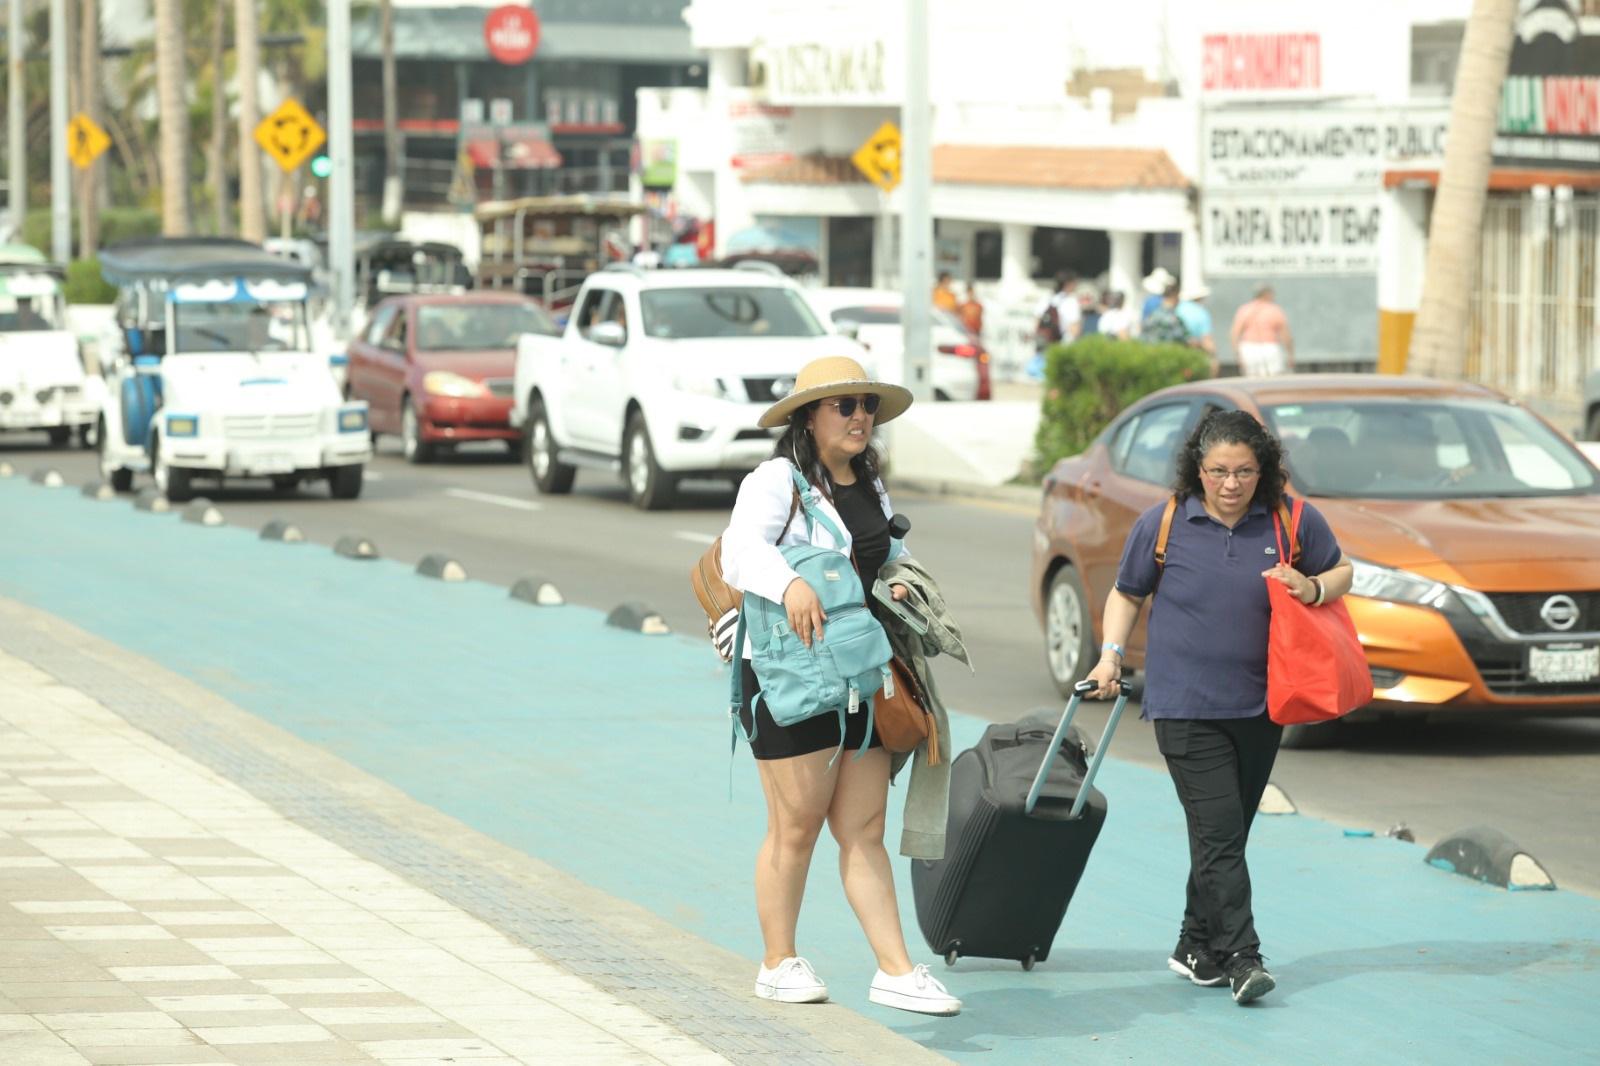 $!Turistas siguen llegando a Mazatlán pese a la cuesta de enero